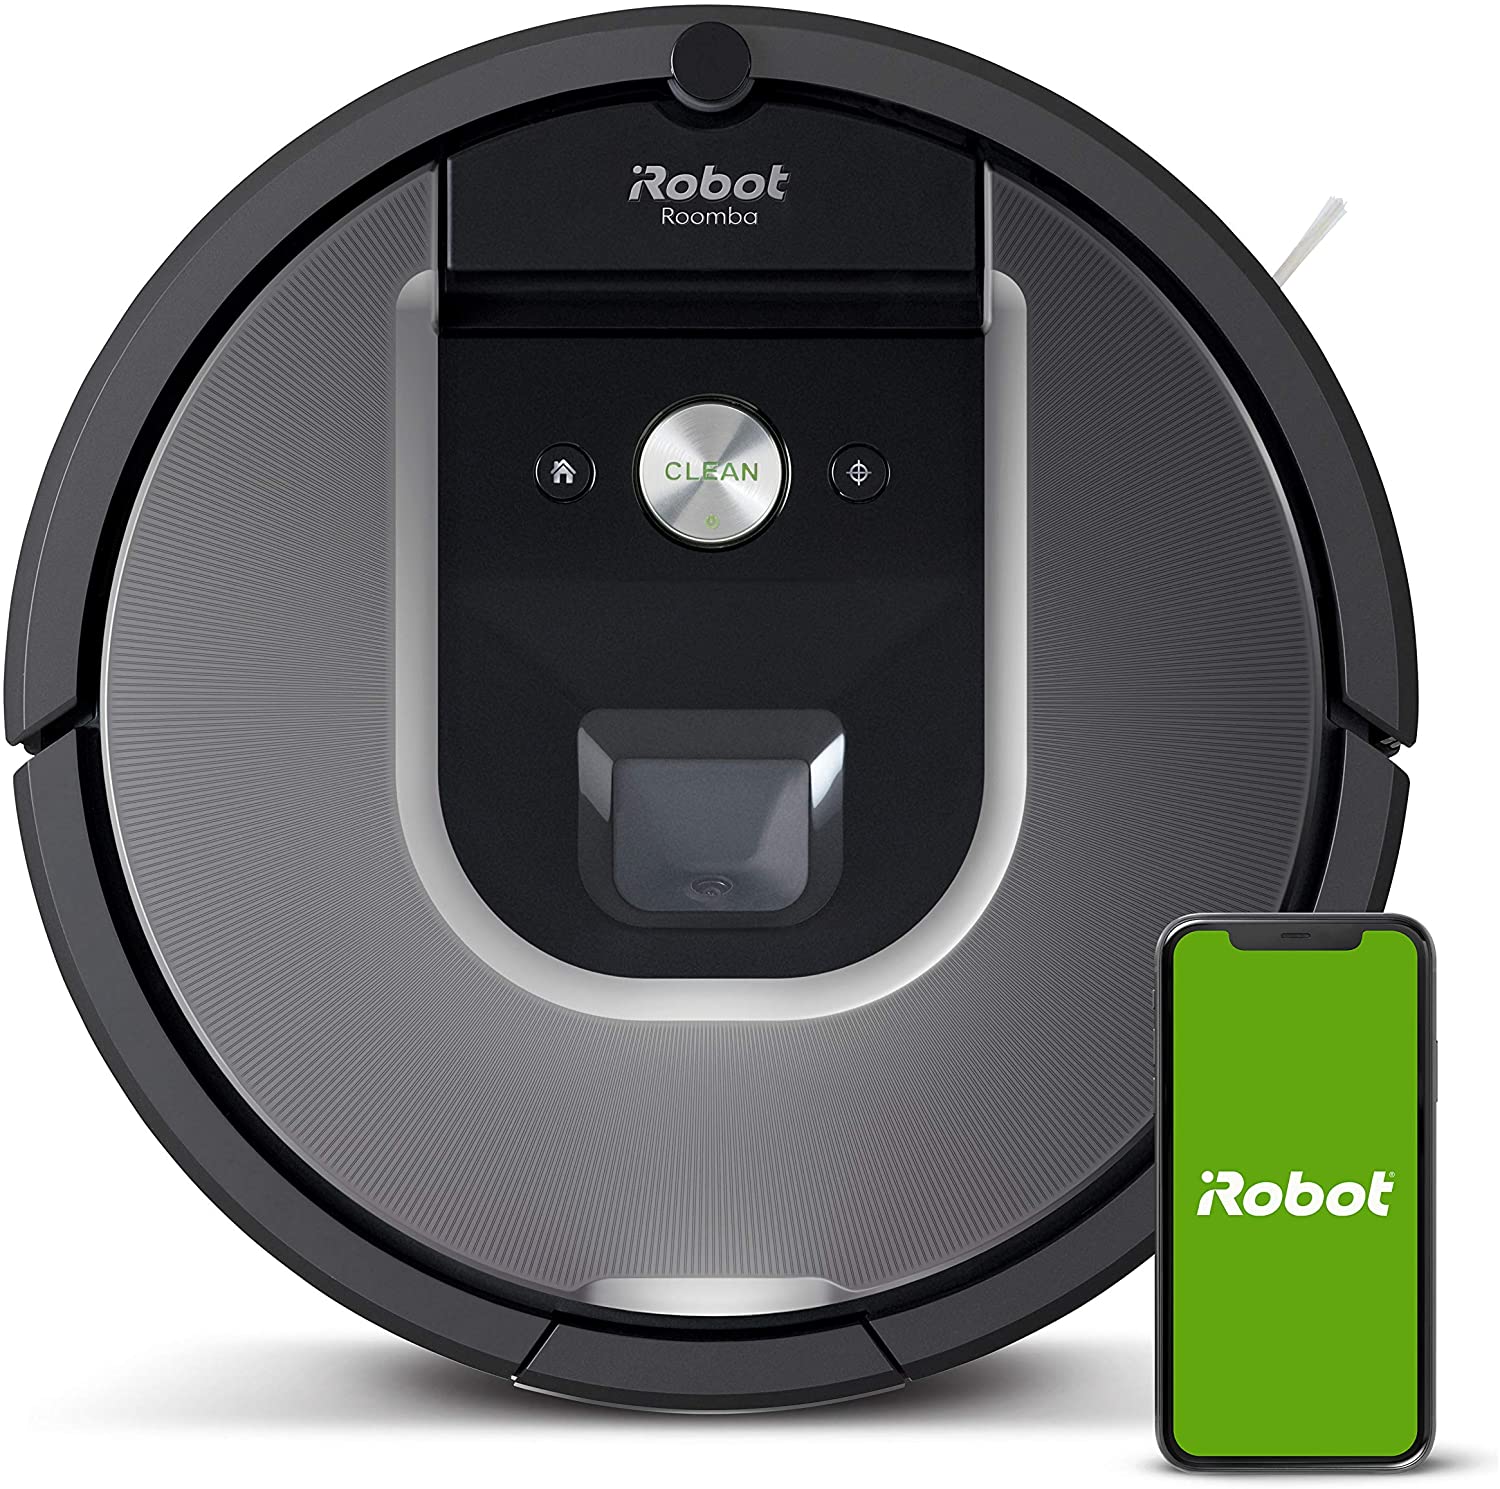 The Best Robotic Vacuum July 21